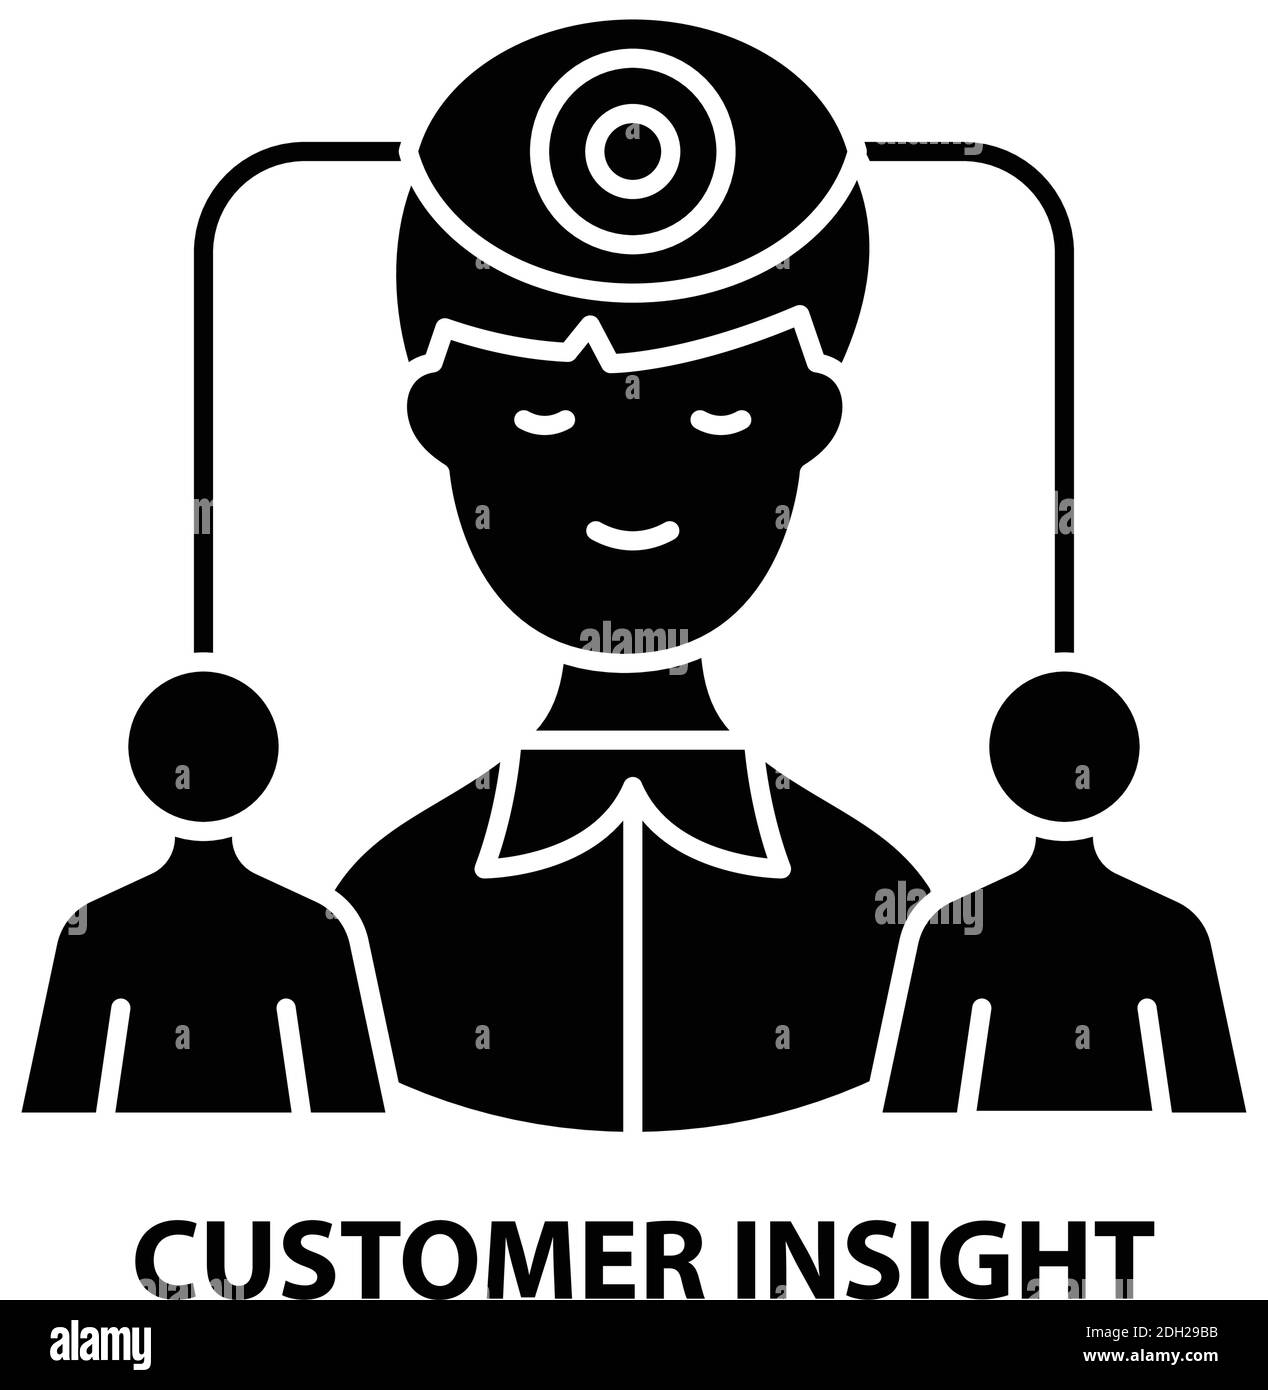 Customer Insight Symbol Symbol, schwarzes Vektorzeichen mit editierbaren Konturen, Konzeptdarstellung Stock Vektor